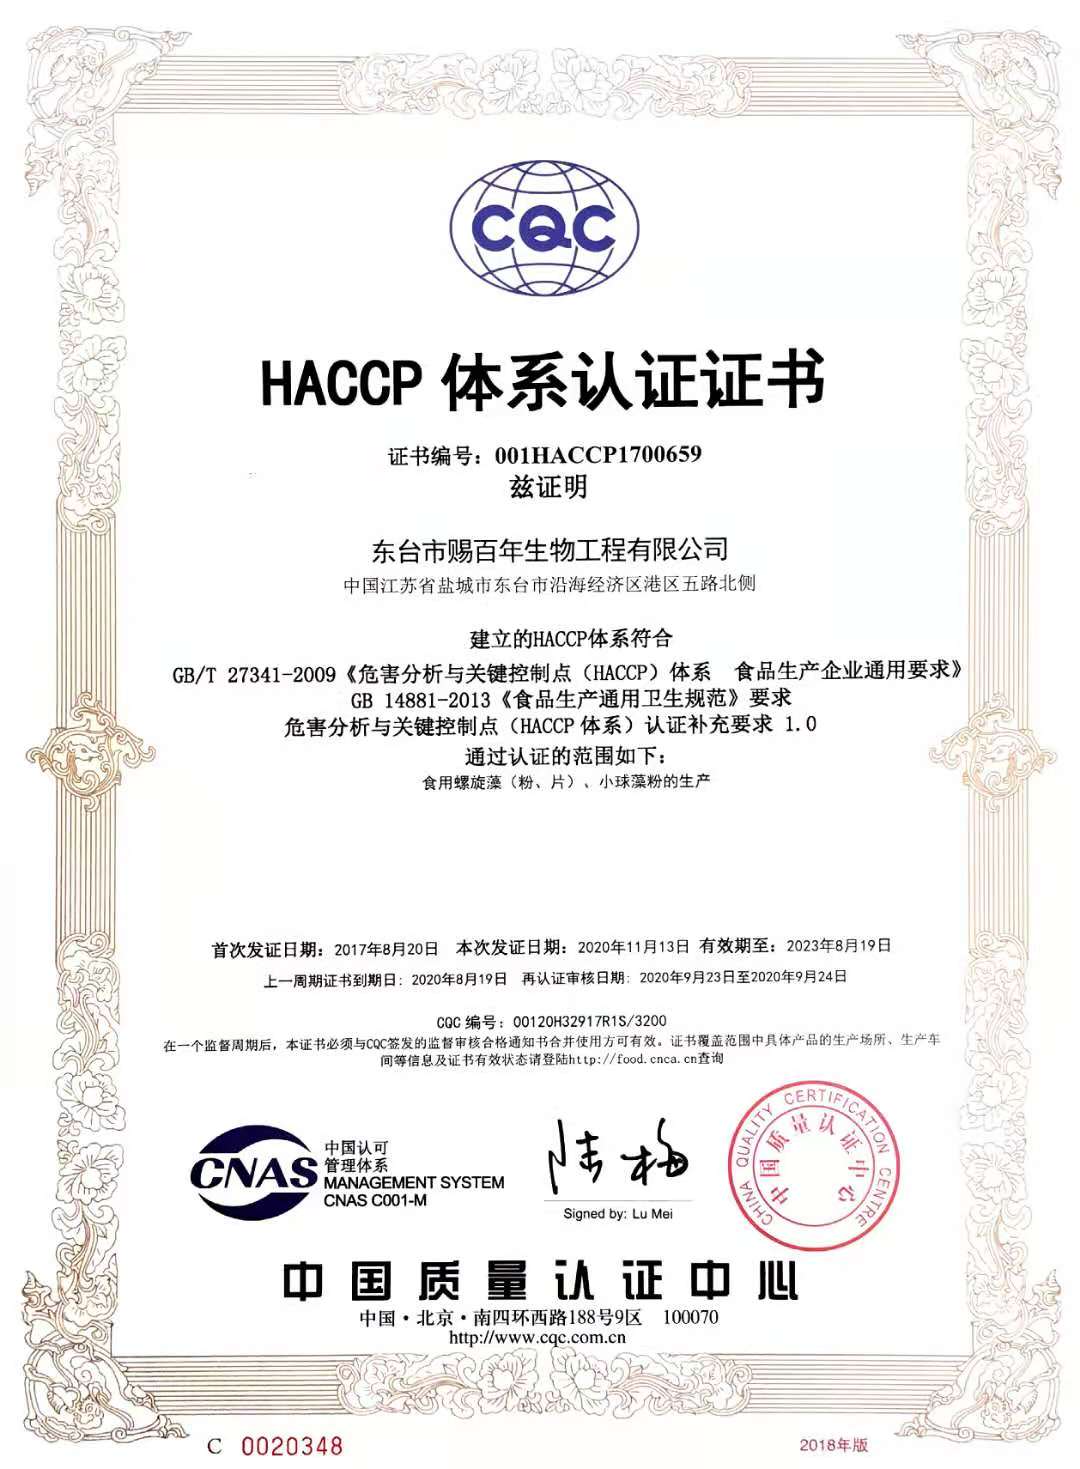 HACCP證書2020